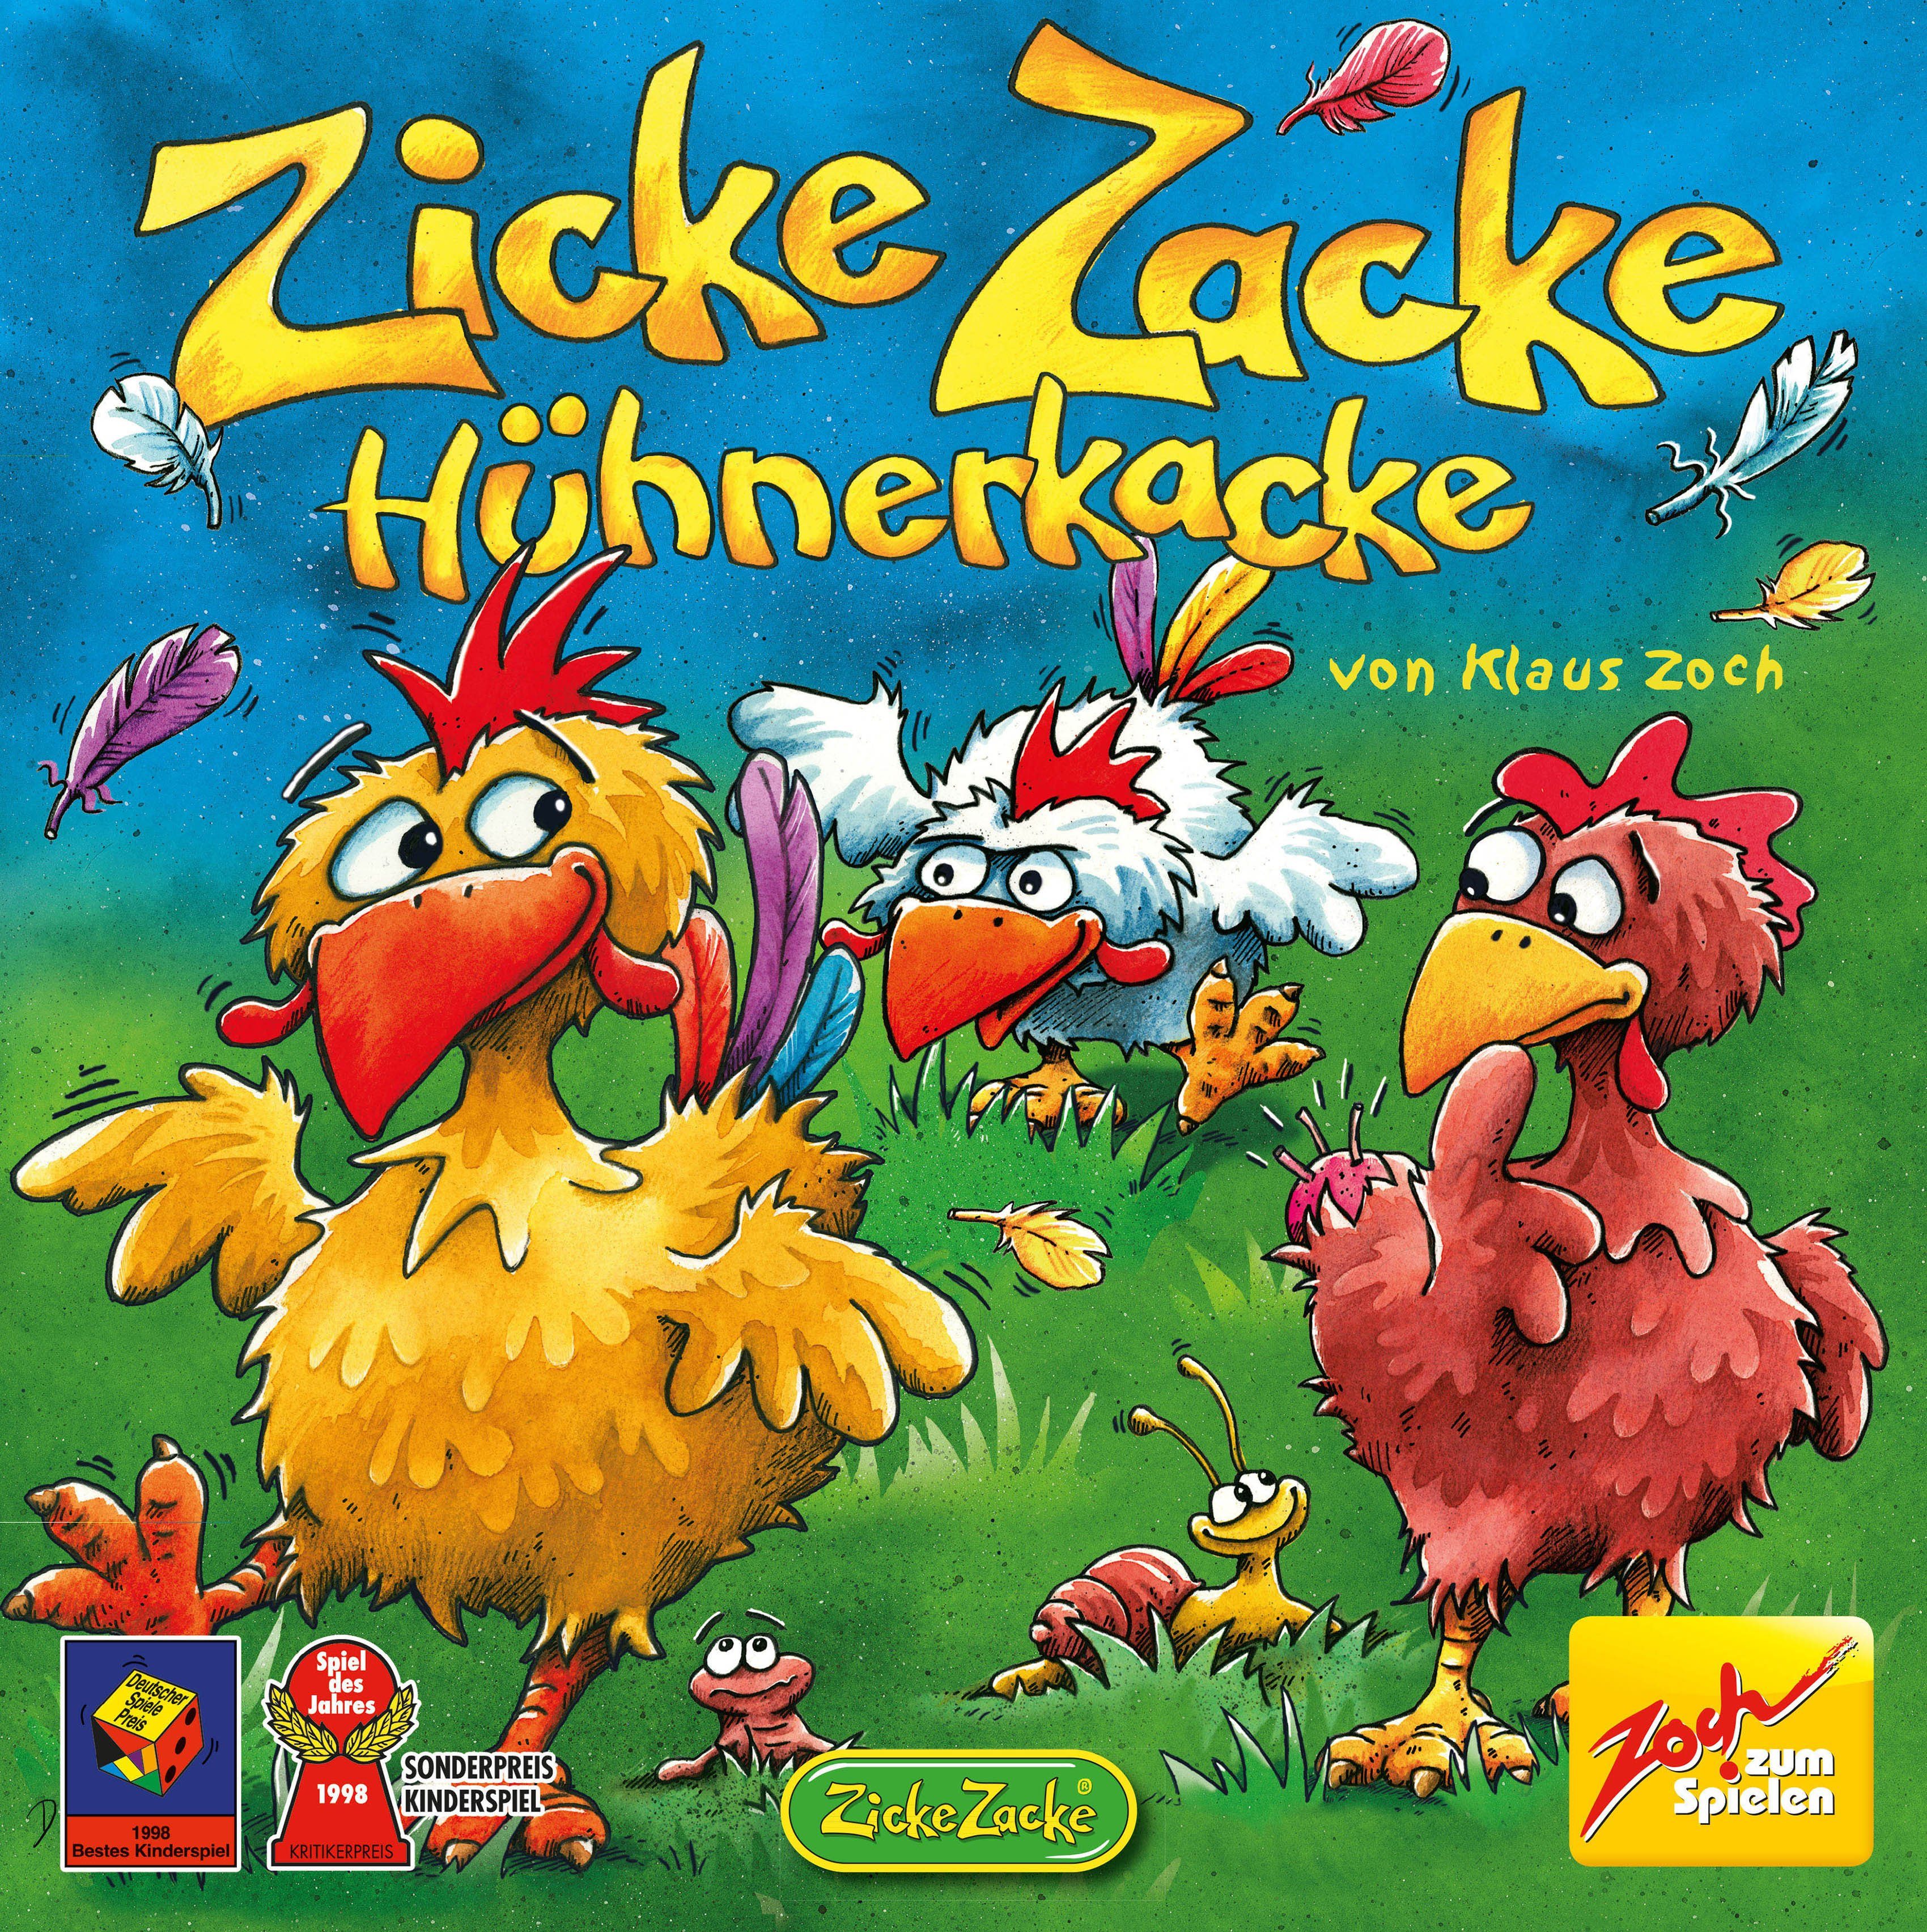 Hühnerkacke, Zicke Zoch Made in Germany Zacke Spiel,